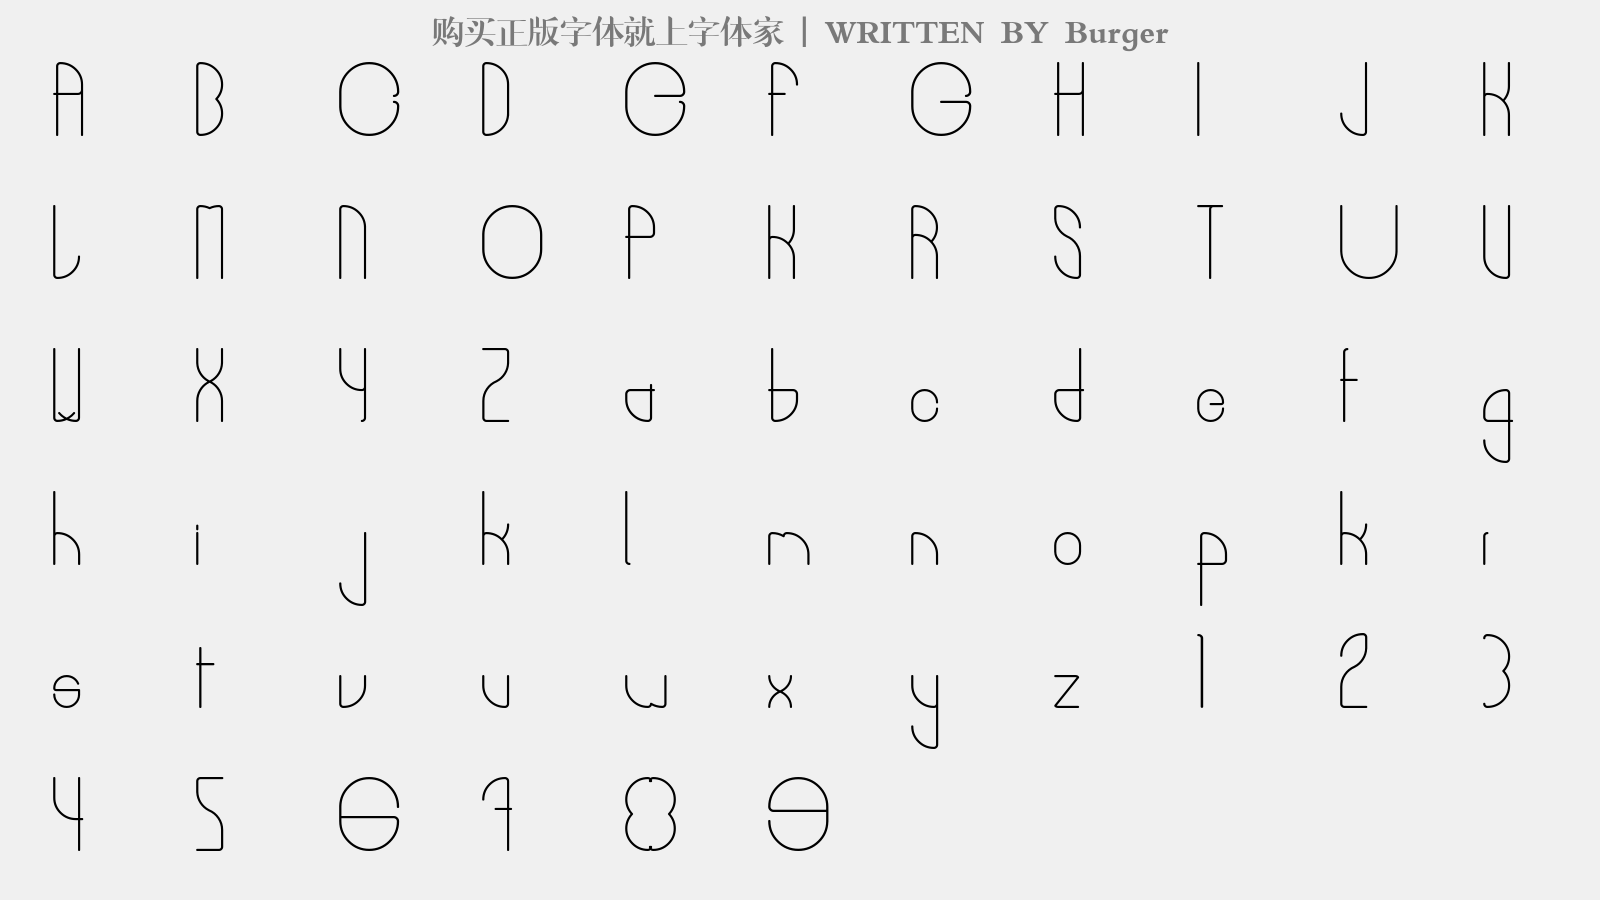 Burger - 大写字母/小写字母/数字